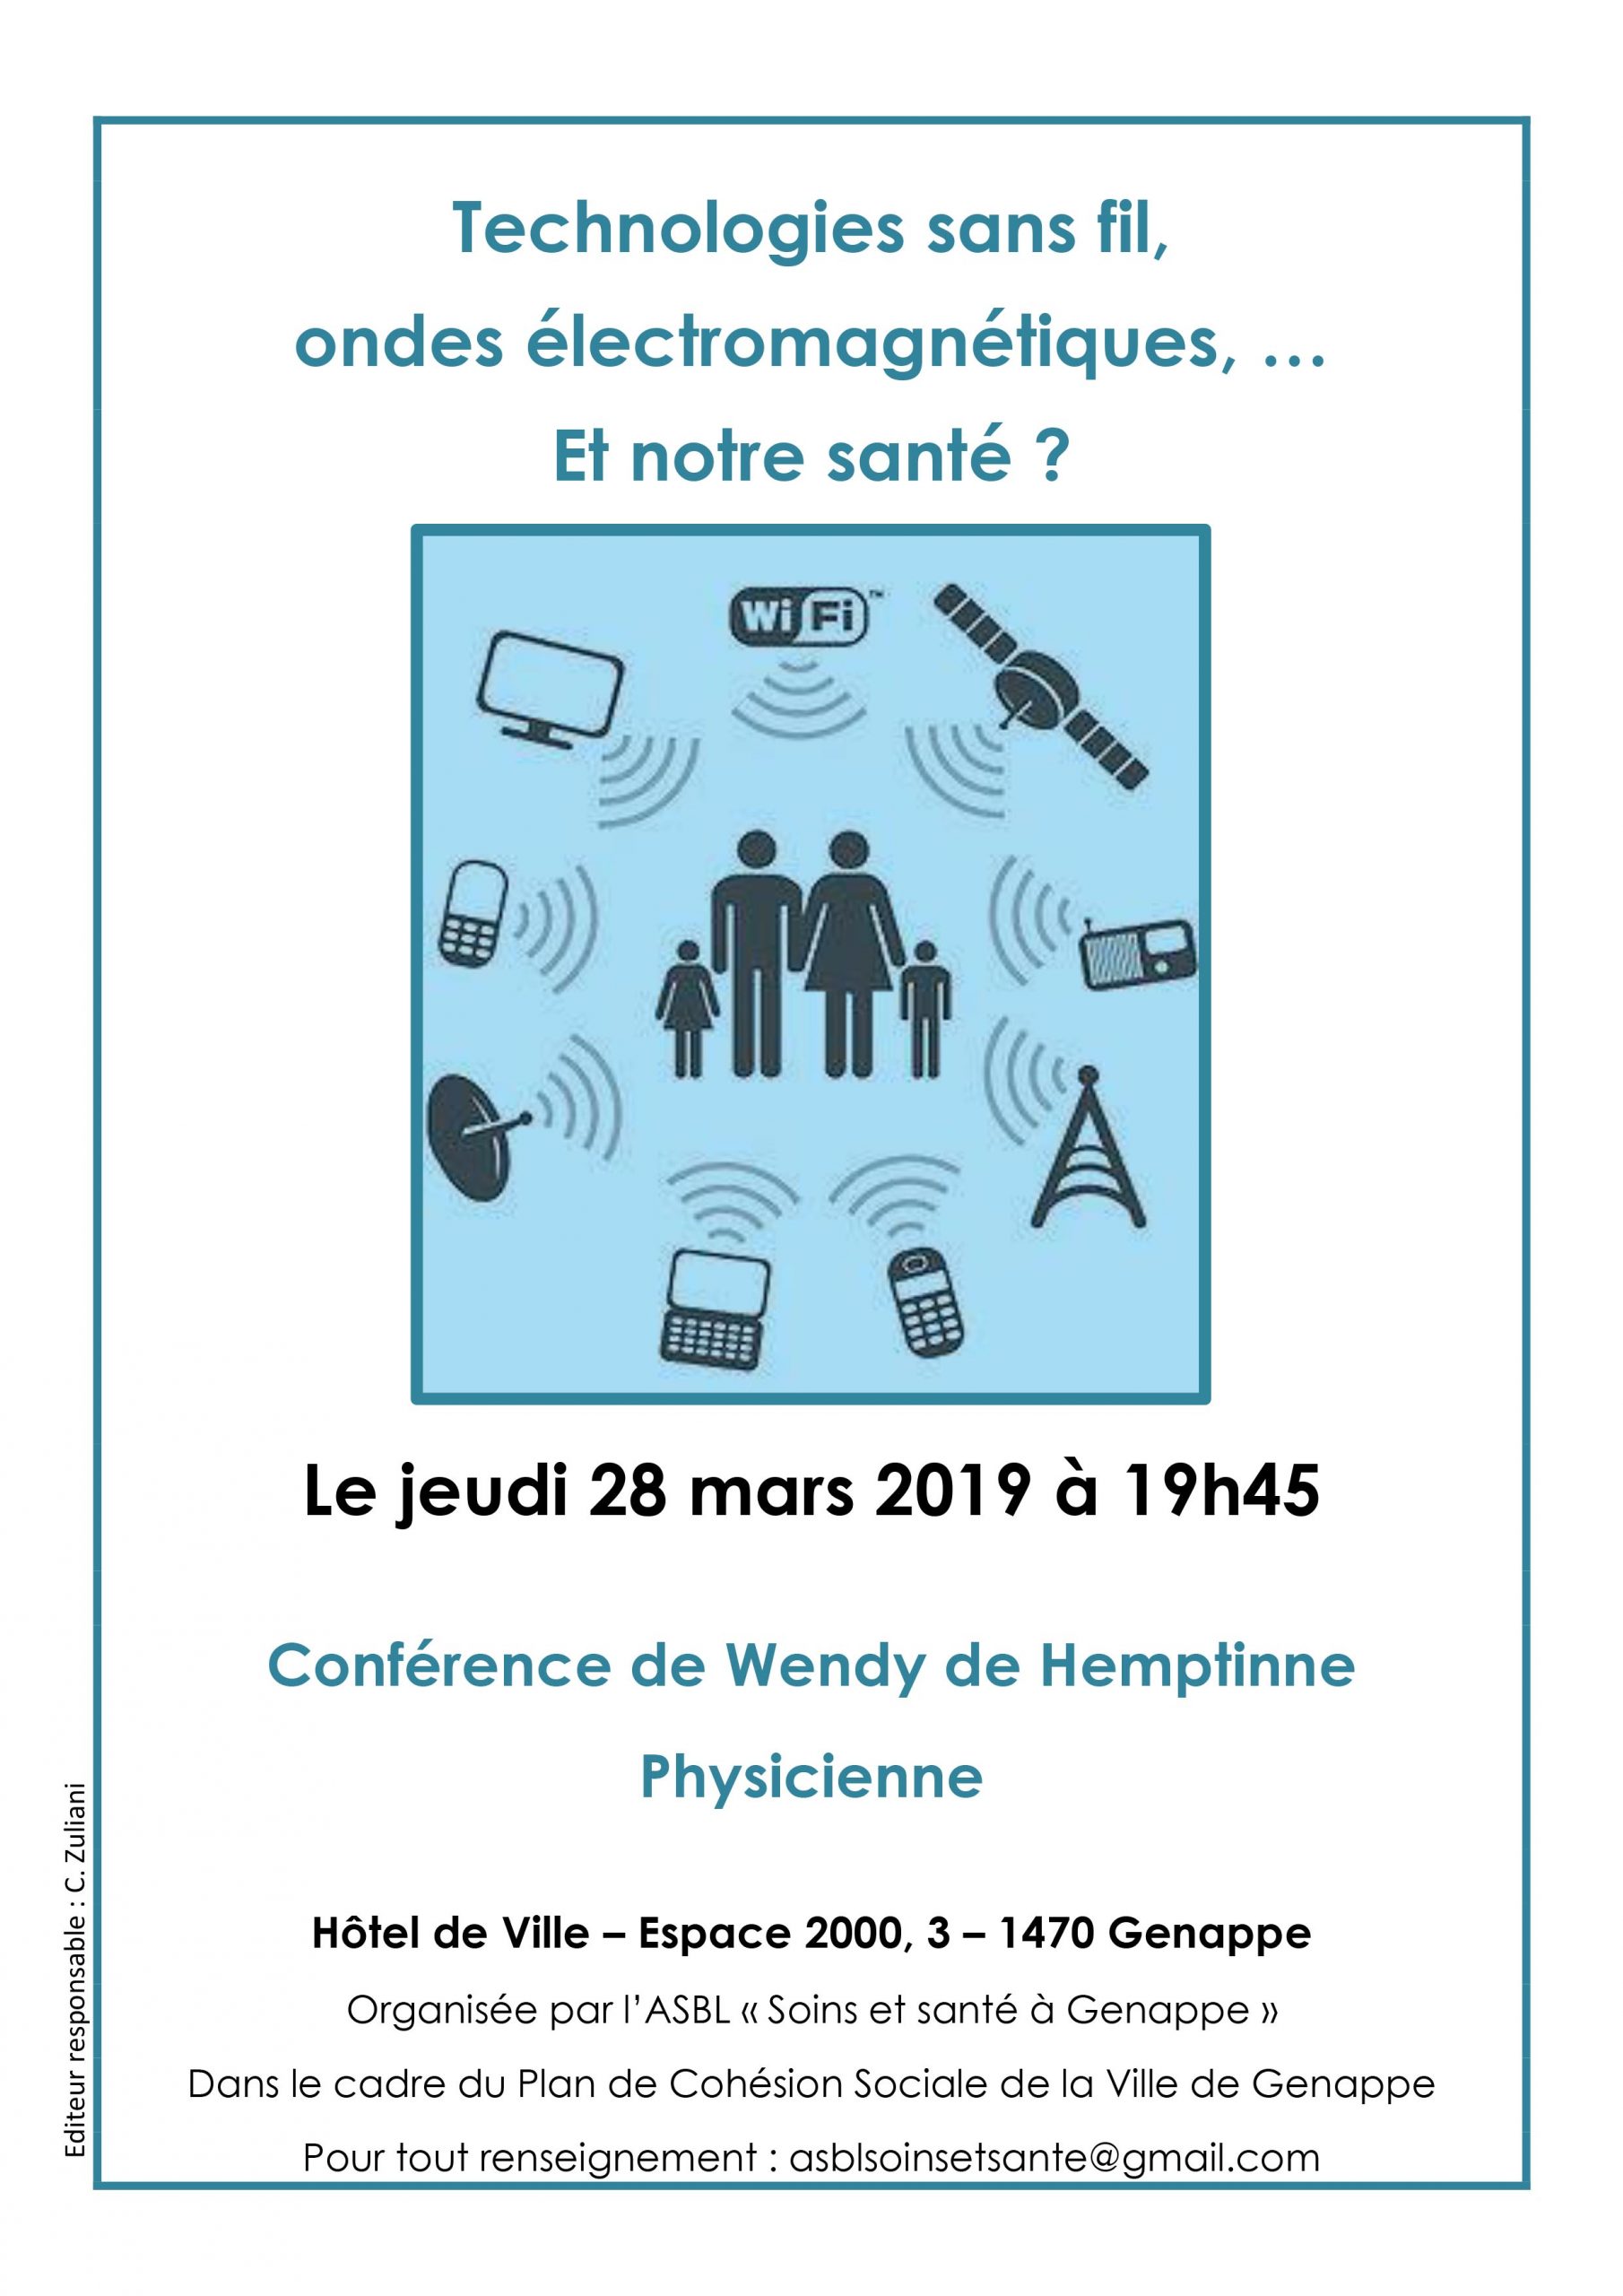 Conférence 28 mars 2019 : Technologies sans fil ? Et notre santé ?